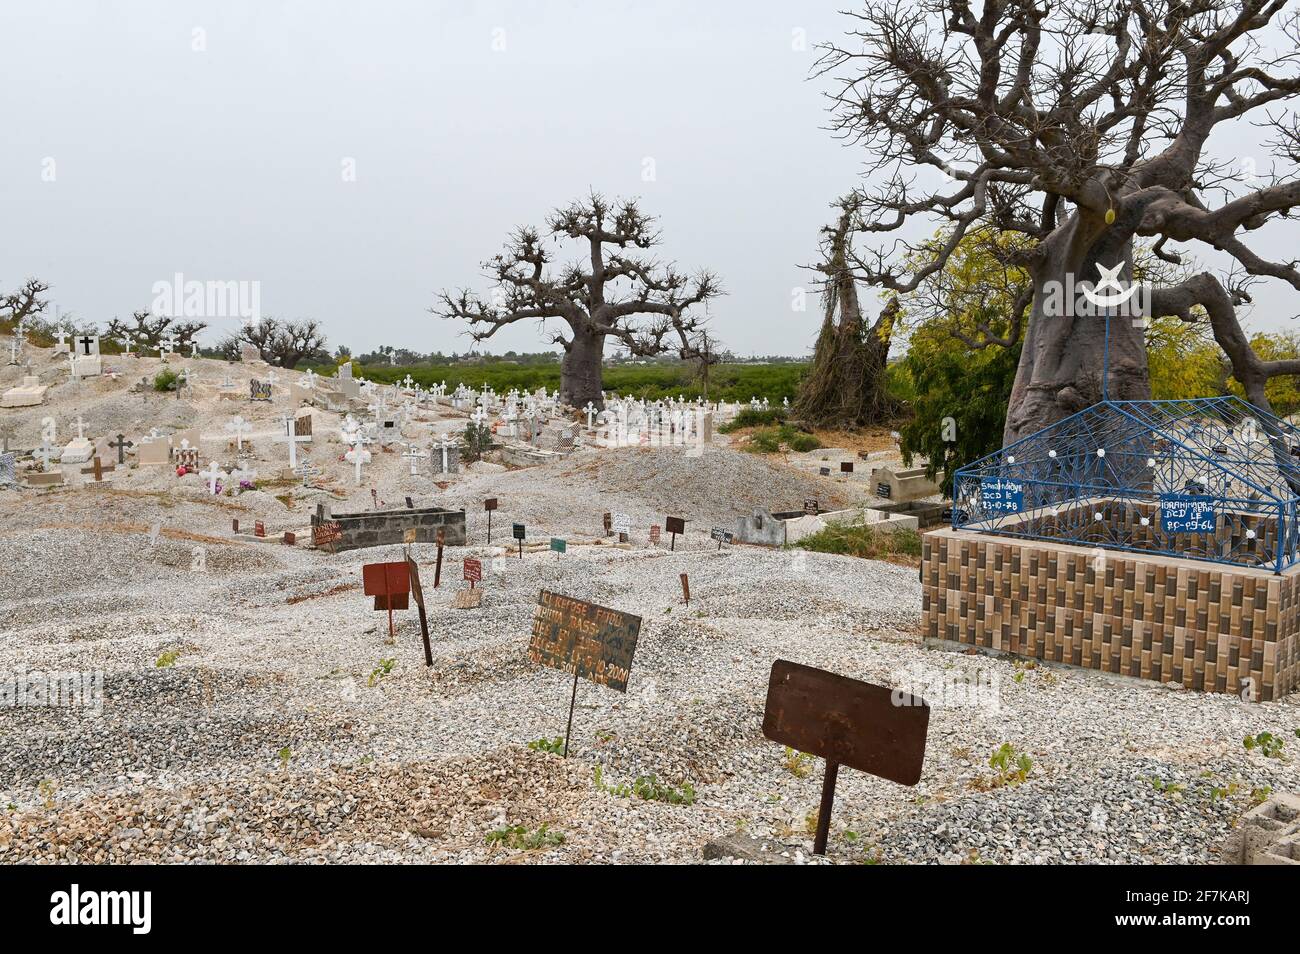 SENEGAL, Insel Fadiouth, Friedhof, gemischter Friedhof mit Gräbern für muslime und christen, Baobab-Baum Stockfoto